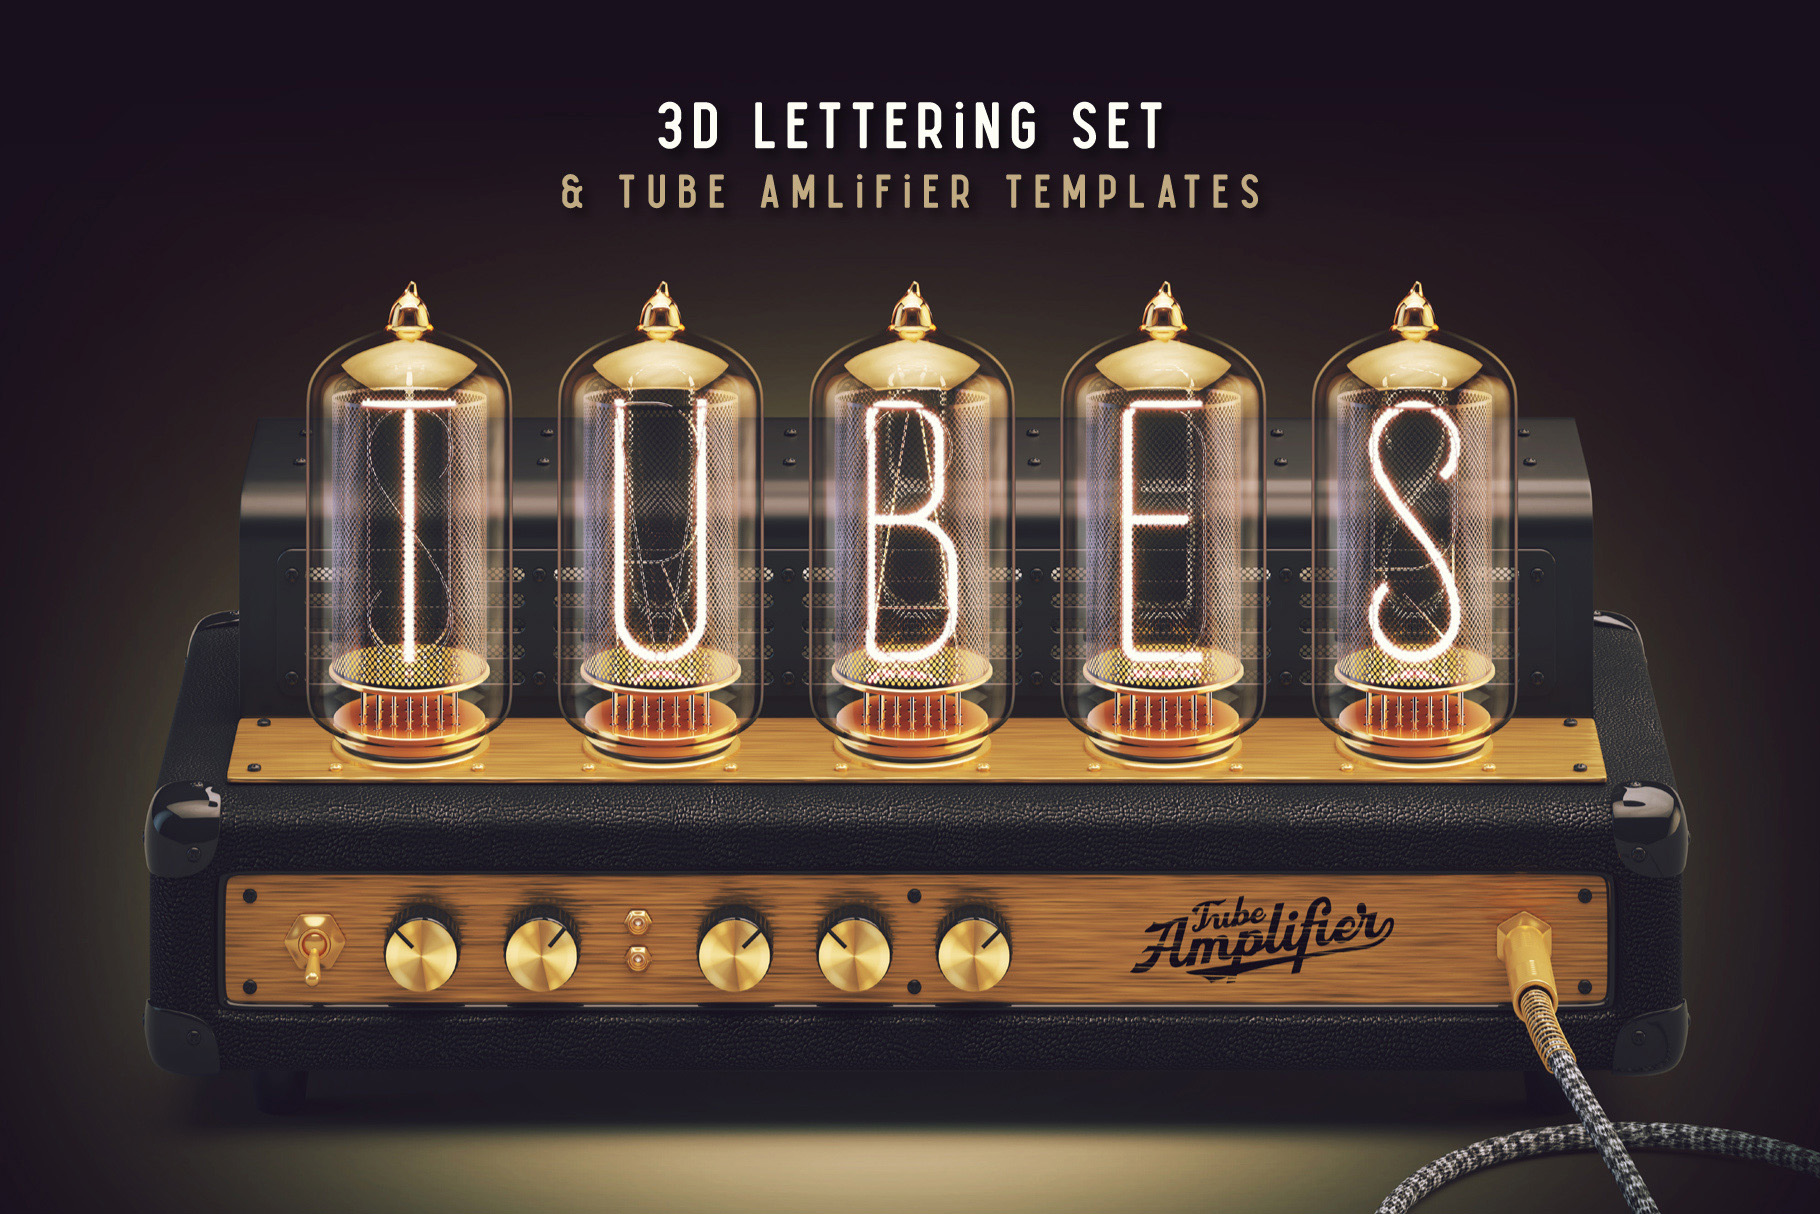 Tubes 3D Lettering Set facebook image.